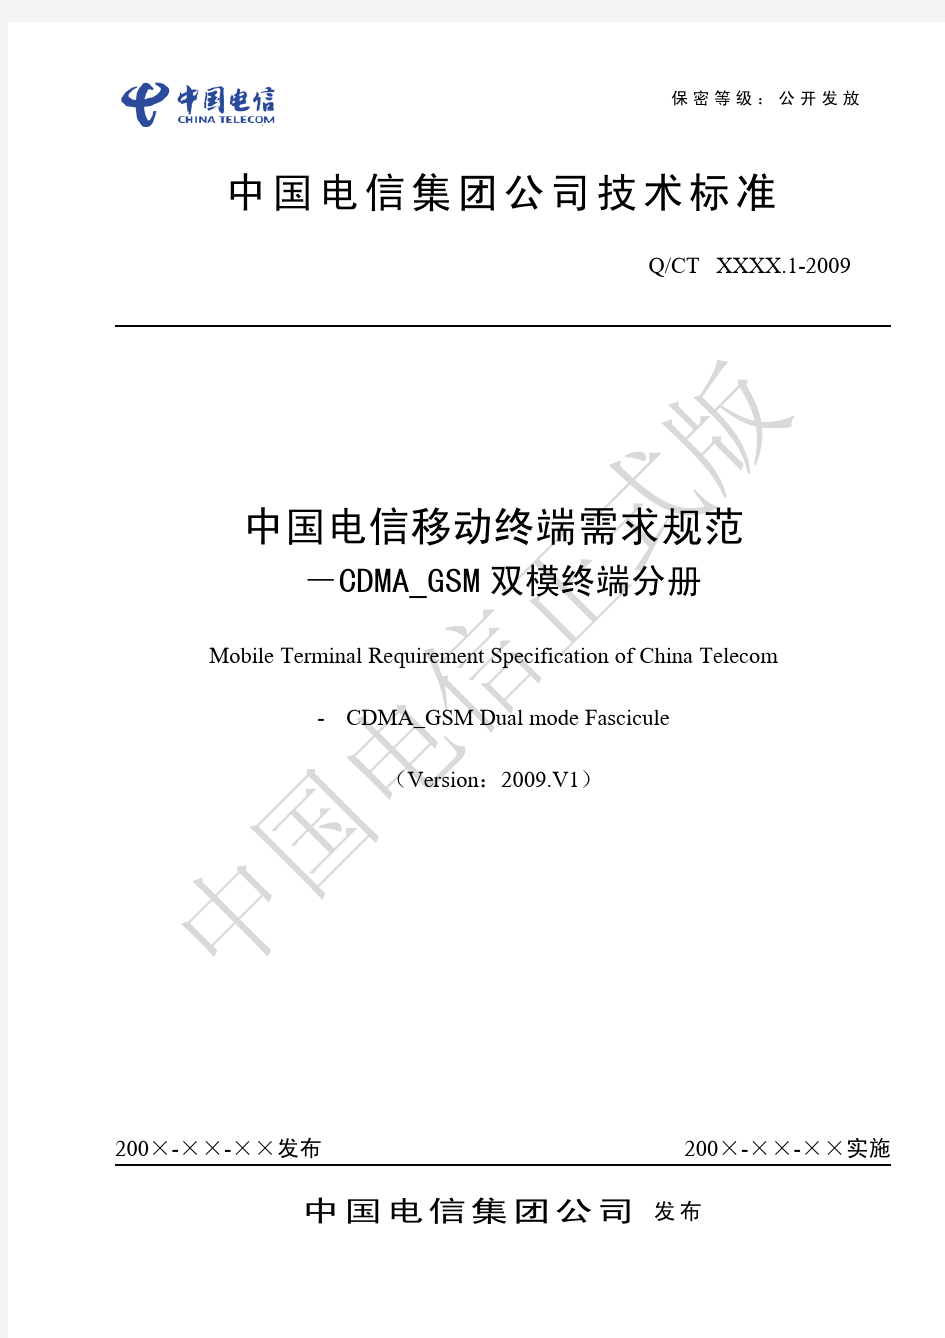 中国电信移动终端需求规范-CDMA_GSM双模终端分册2009.V1